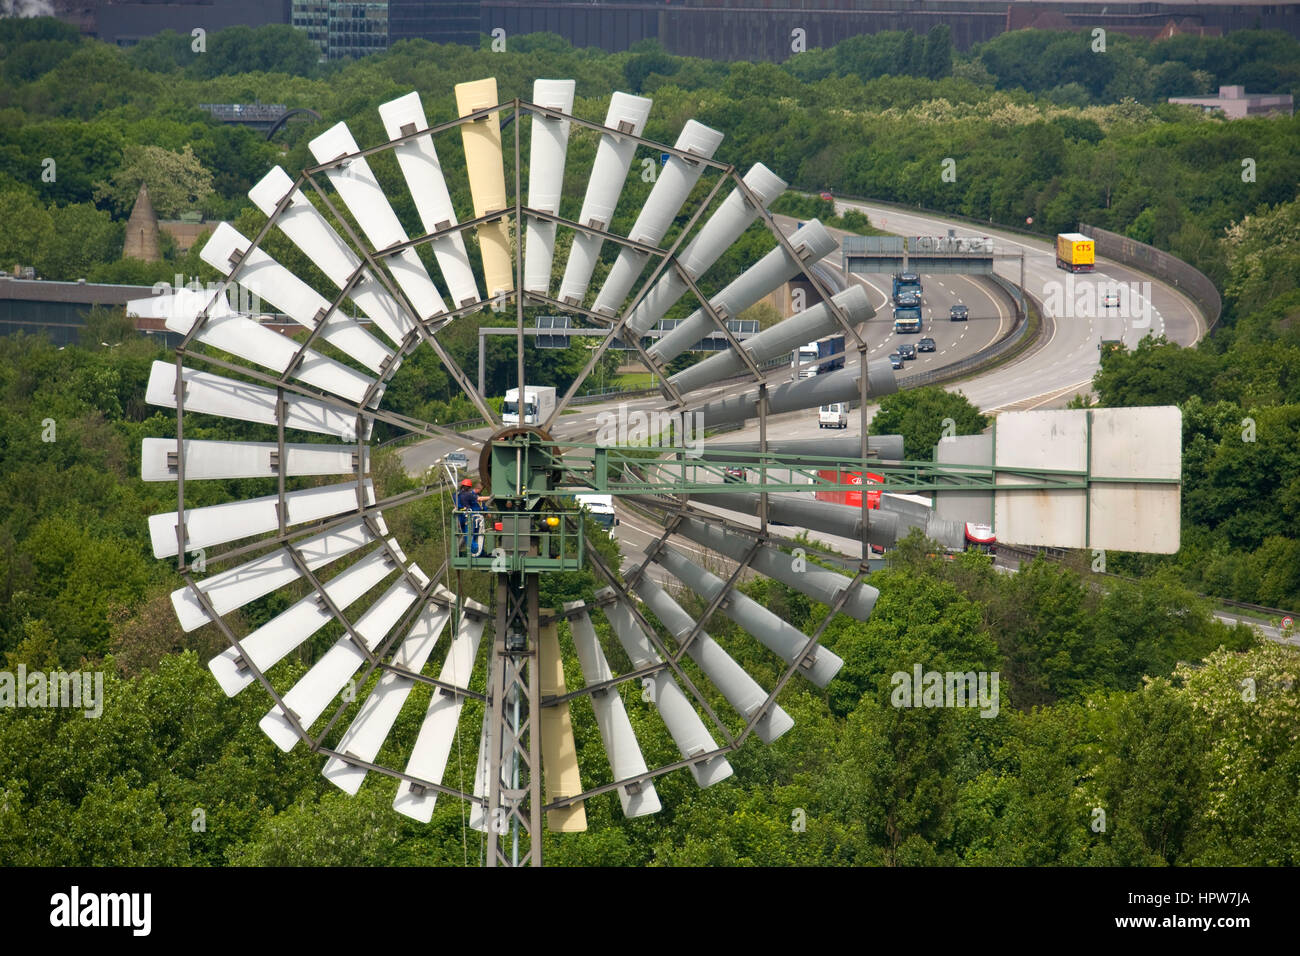 Germania, Duisburg, il parco di Duisburg-Nord, ex Thyssen altoforno lavora nel quartiere Meiderich, torre di energia, vento whee Foto Stock